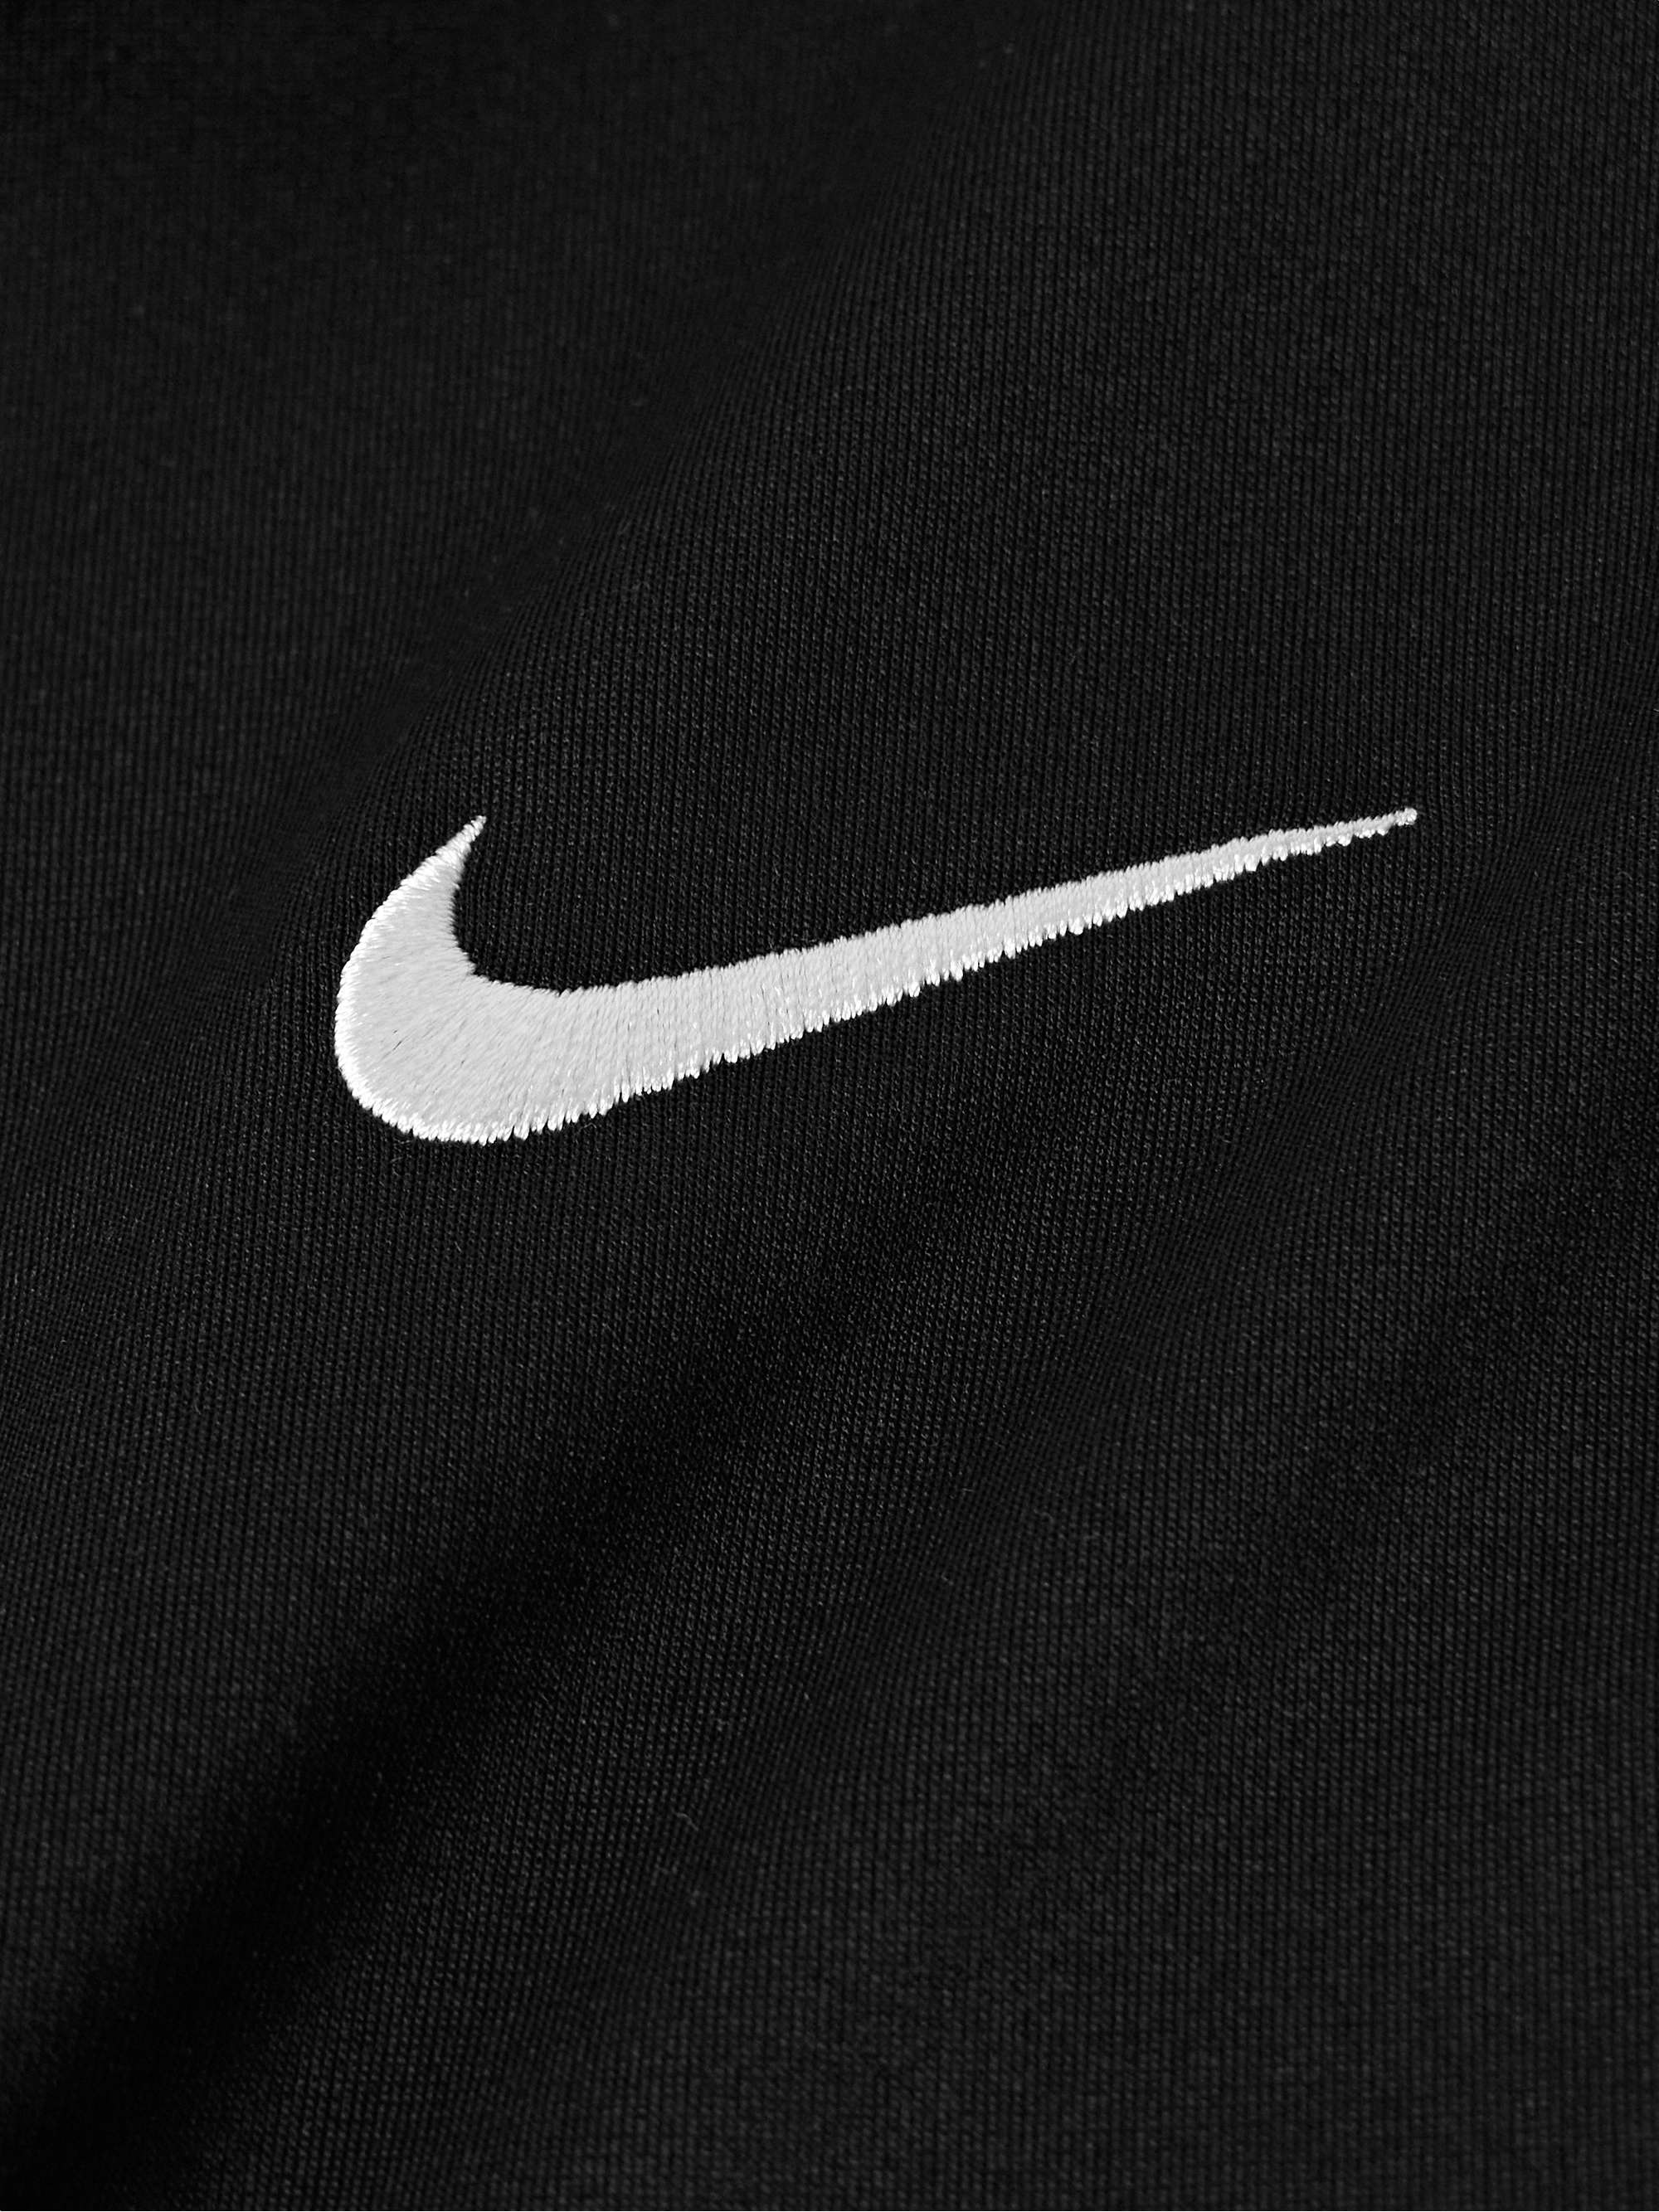 NIKE TENNIS NikeCourt Logo-Embroidered Dri-FIT Tennis Polo Shirt for ...